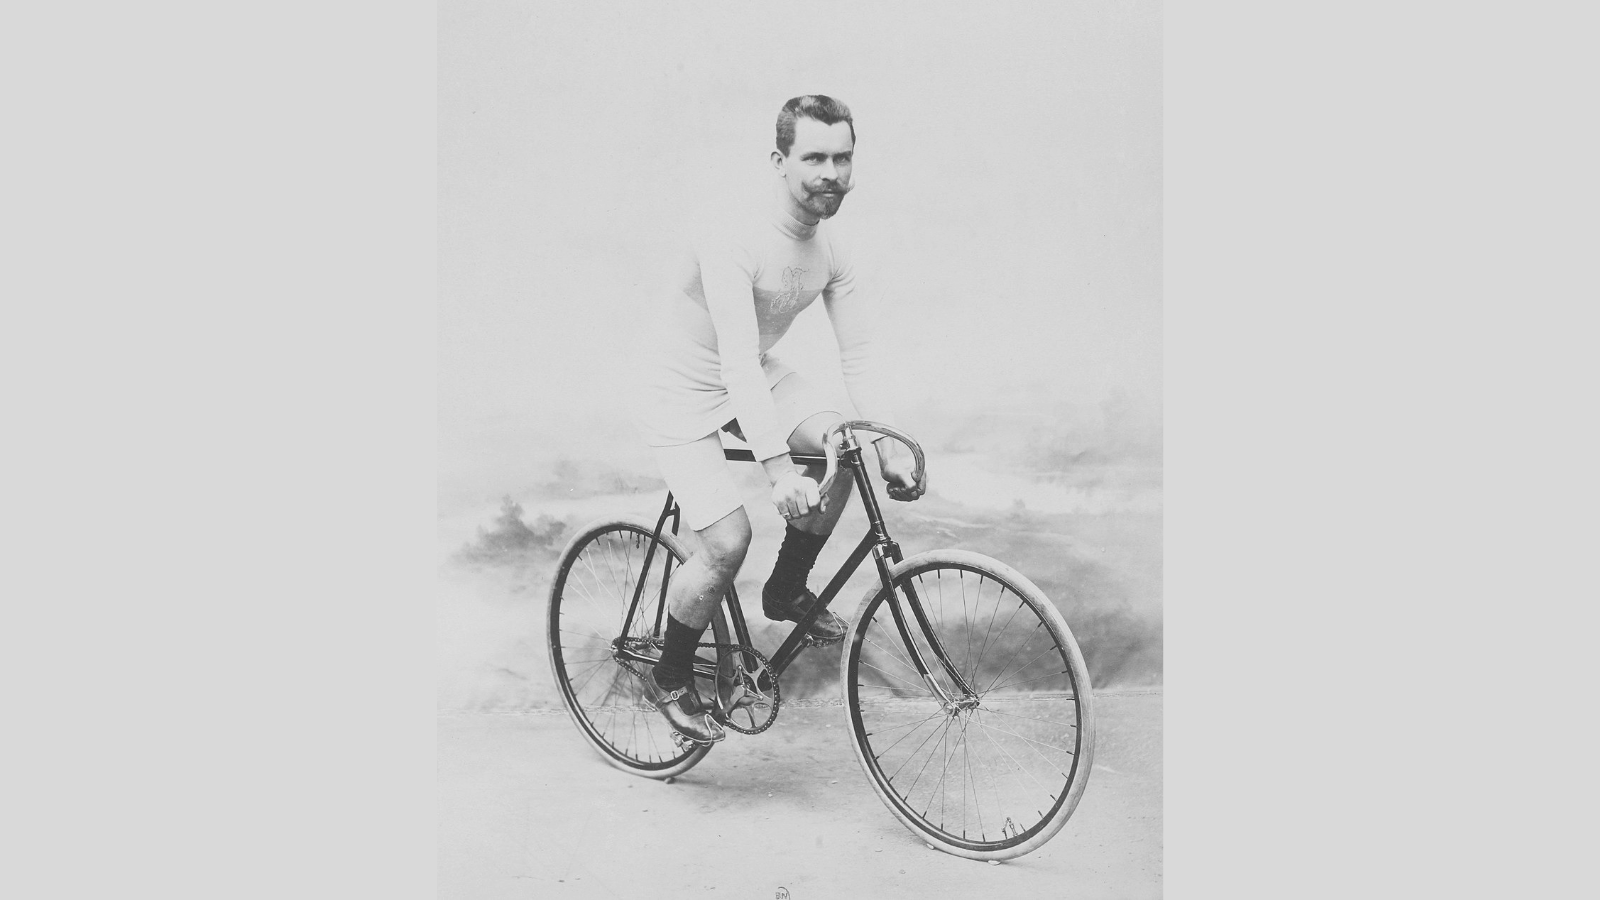 Josef Fischer (1865-1953) the winner of the first Paris-Roubaix (1896)